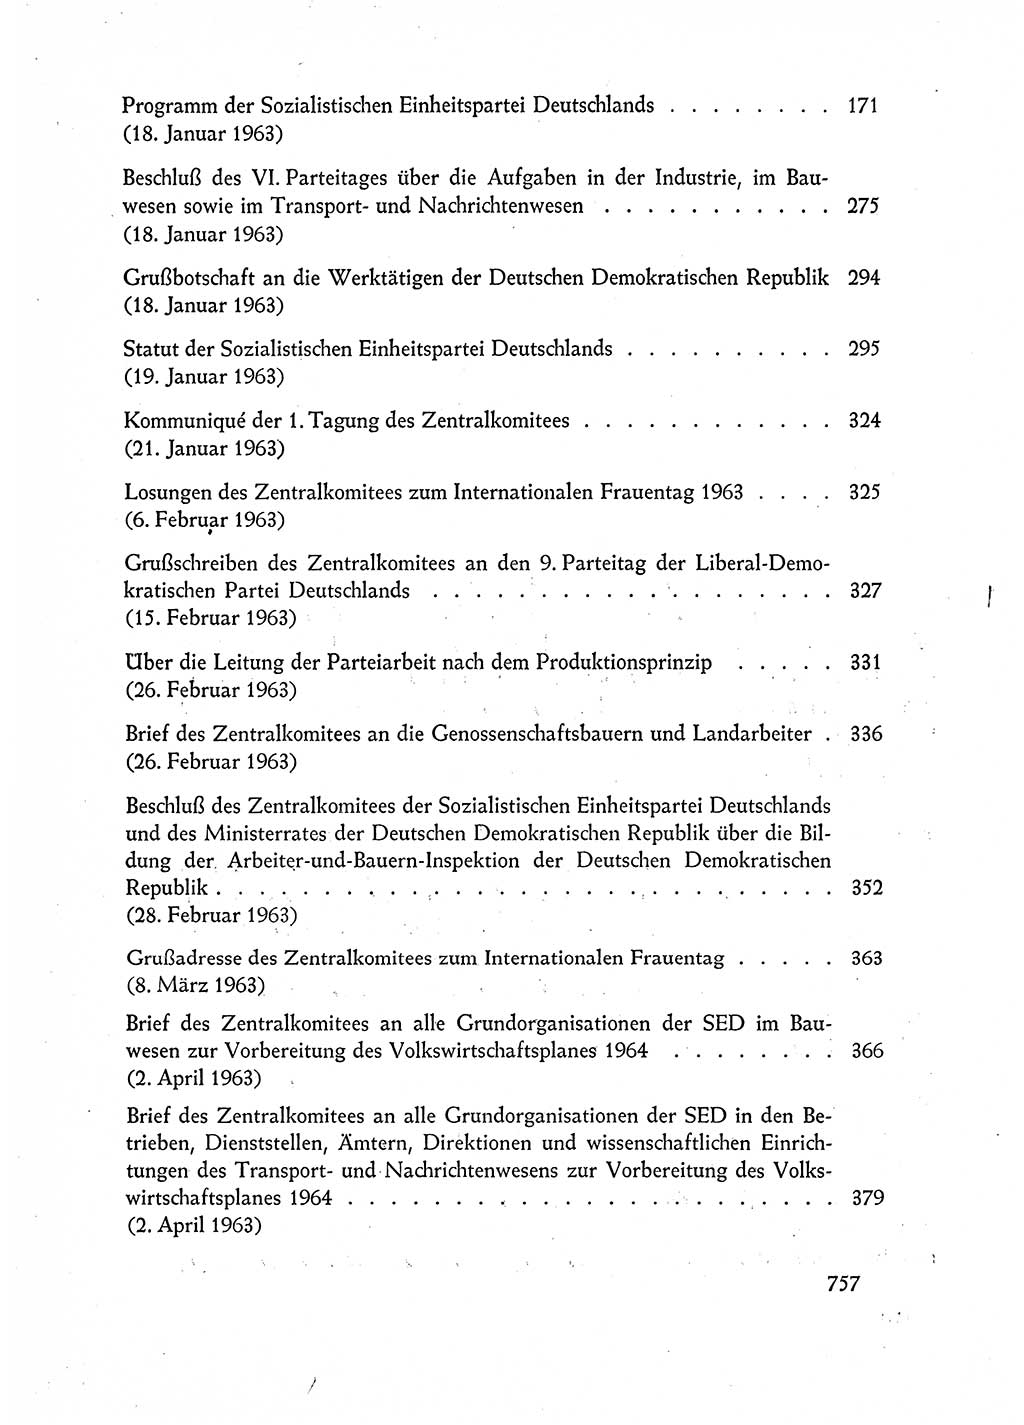 Dokumente der Sozialistischen Einheitspartei Deutschlands (SED) [Deutsche Demokratische Republik (DDR)] 1962-1963, Seite 757 (Dok. SED DDR 1962-1963, S. 757)